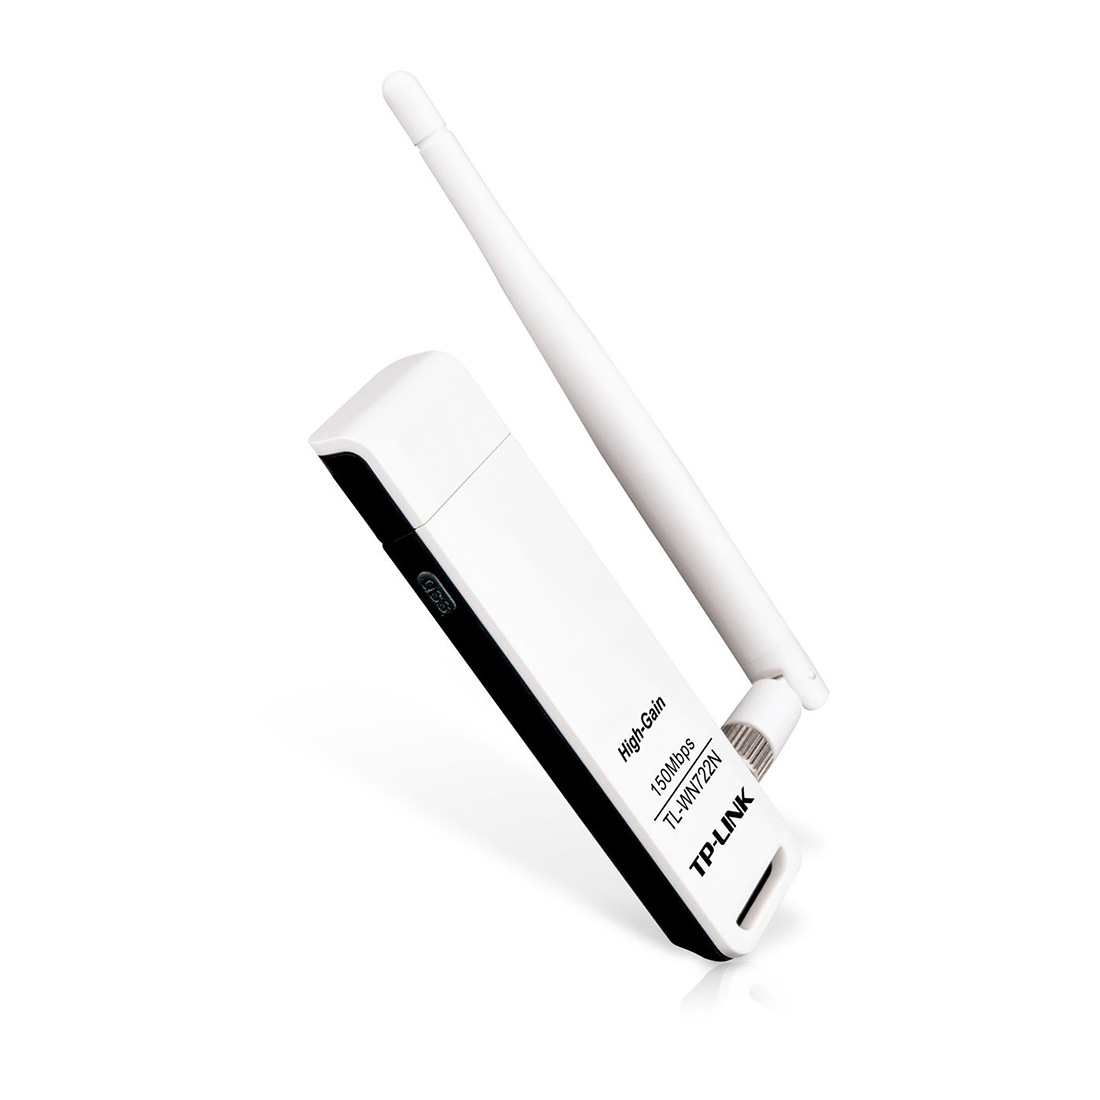 Routeur wifi TP-LINK AC1200 ARCHER C50, Electroplanet